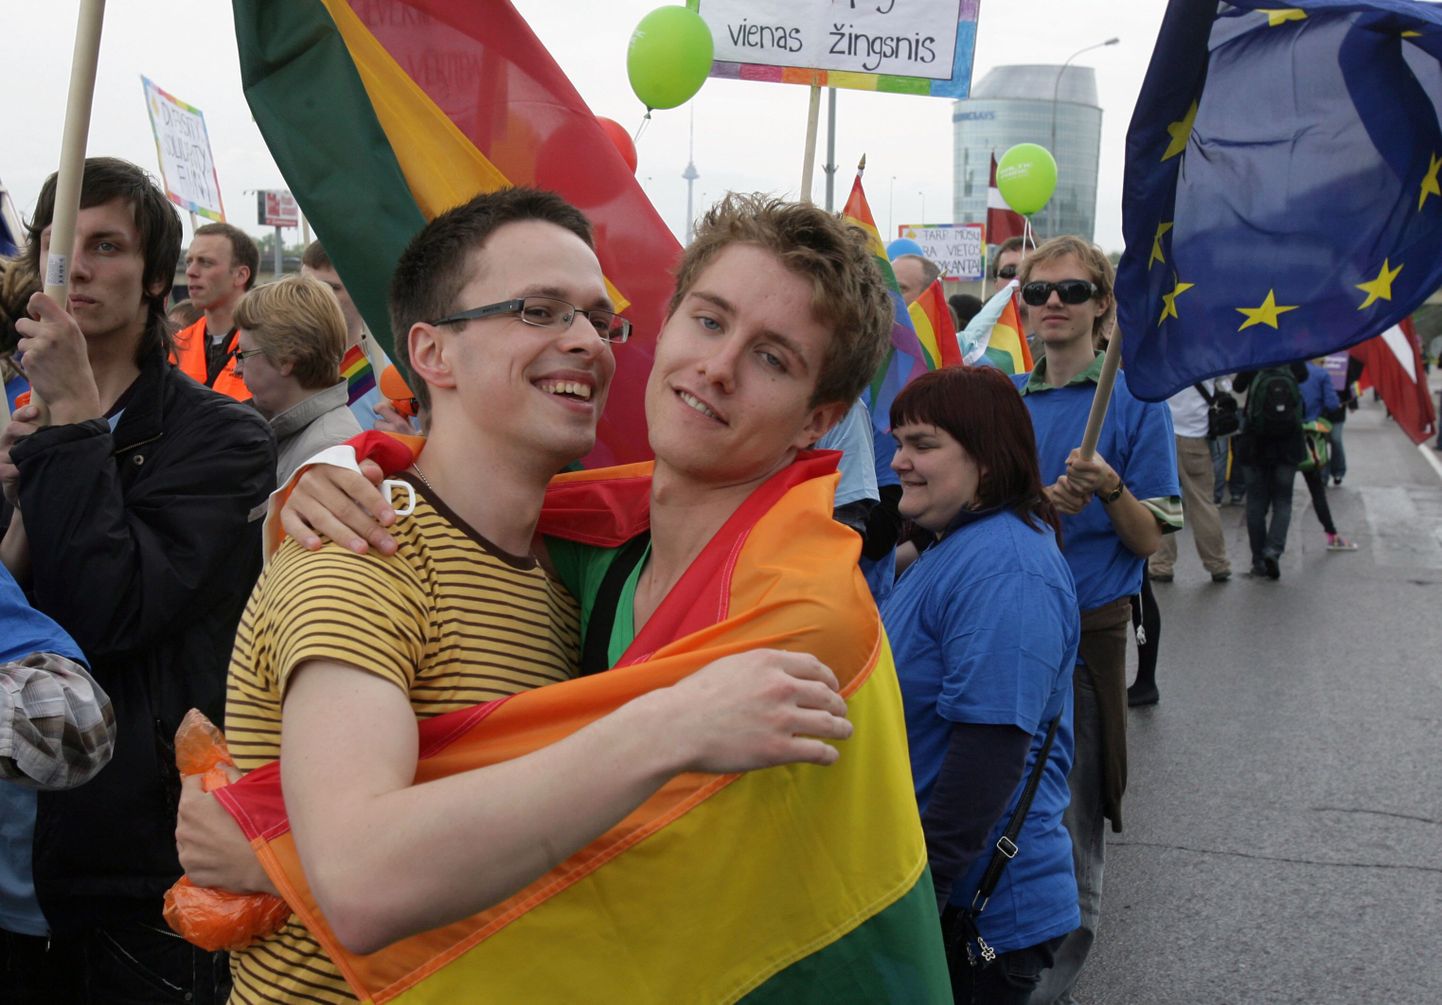 Leedu esimesest homoparaadist, 2010. aastal toimunud Baltic Pride'ist osavõtjad.